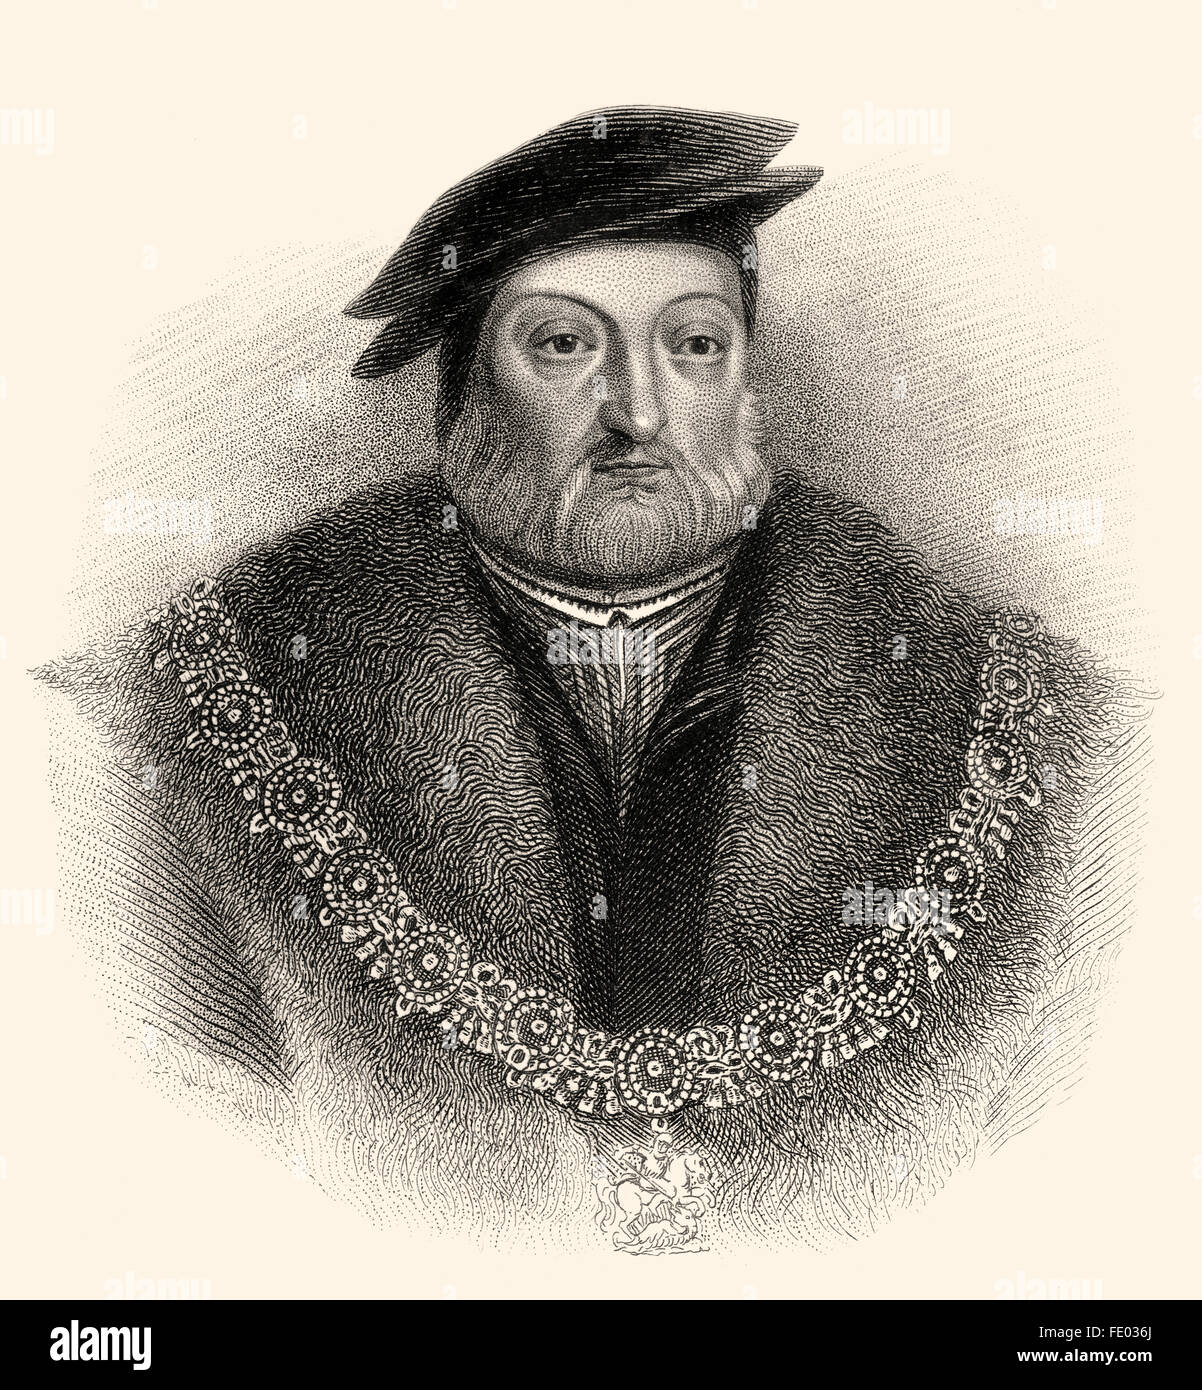 Charles Brandon, duc de Suffolk, 1er vicomte Lisle, KG, ch. 1484-1545, époux de Marie Tudor, beau-frère d'Henry VIII Banque D'Images